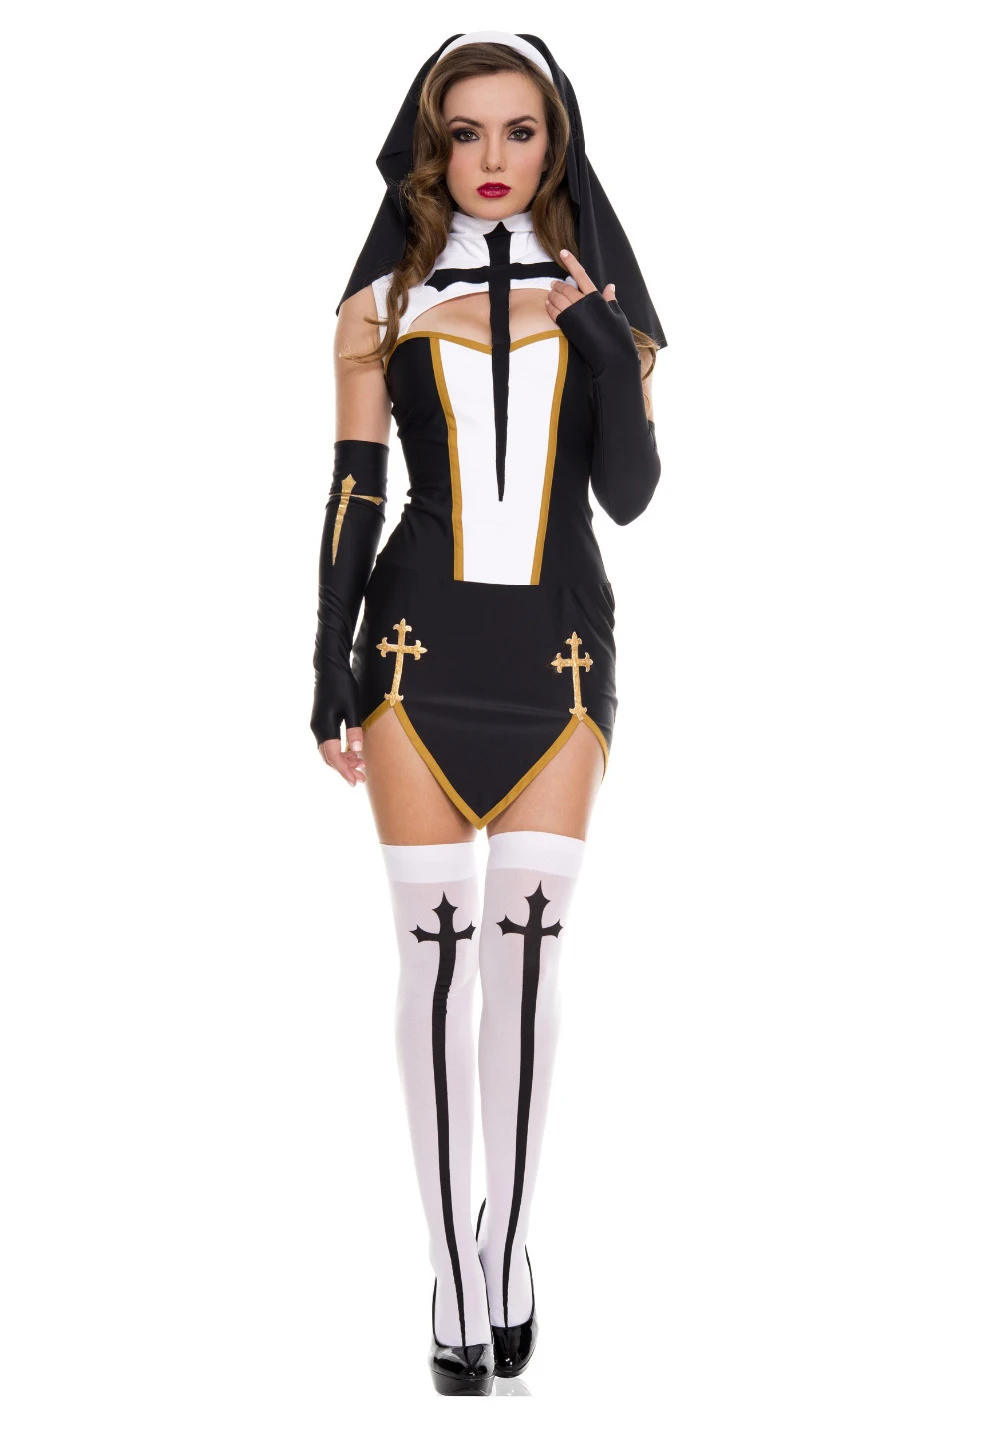 Sexy Female Priest